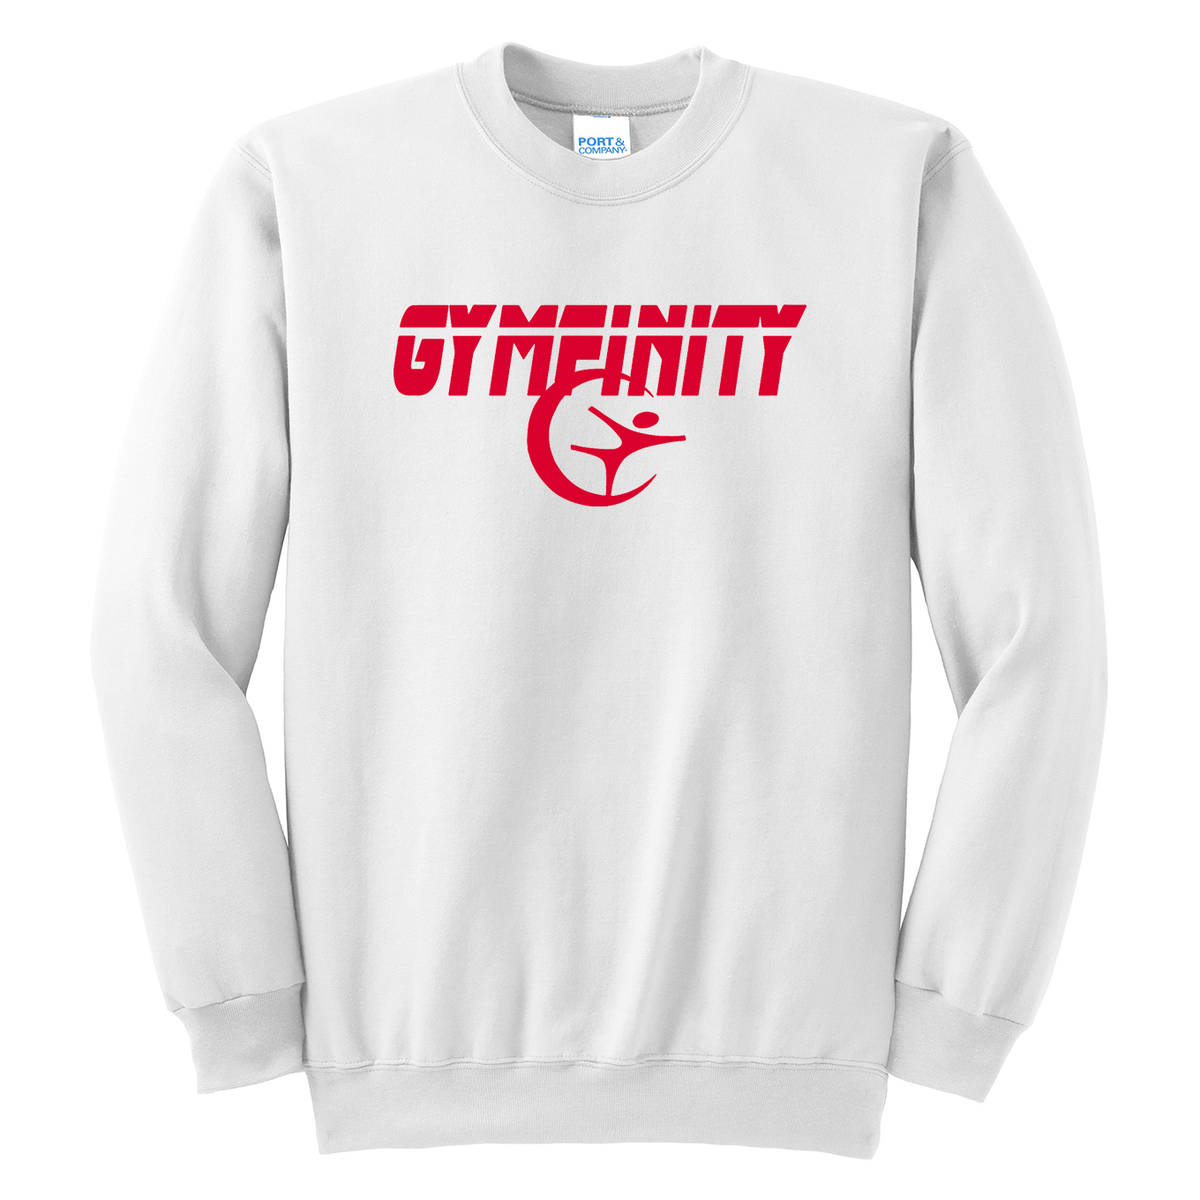 Gymfinity Crew Neck Sweater